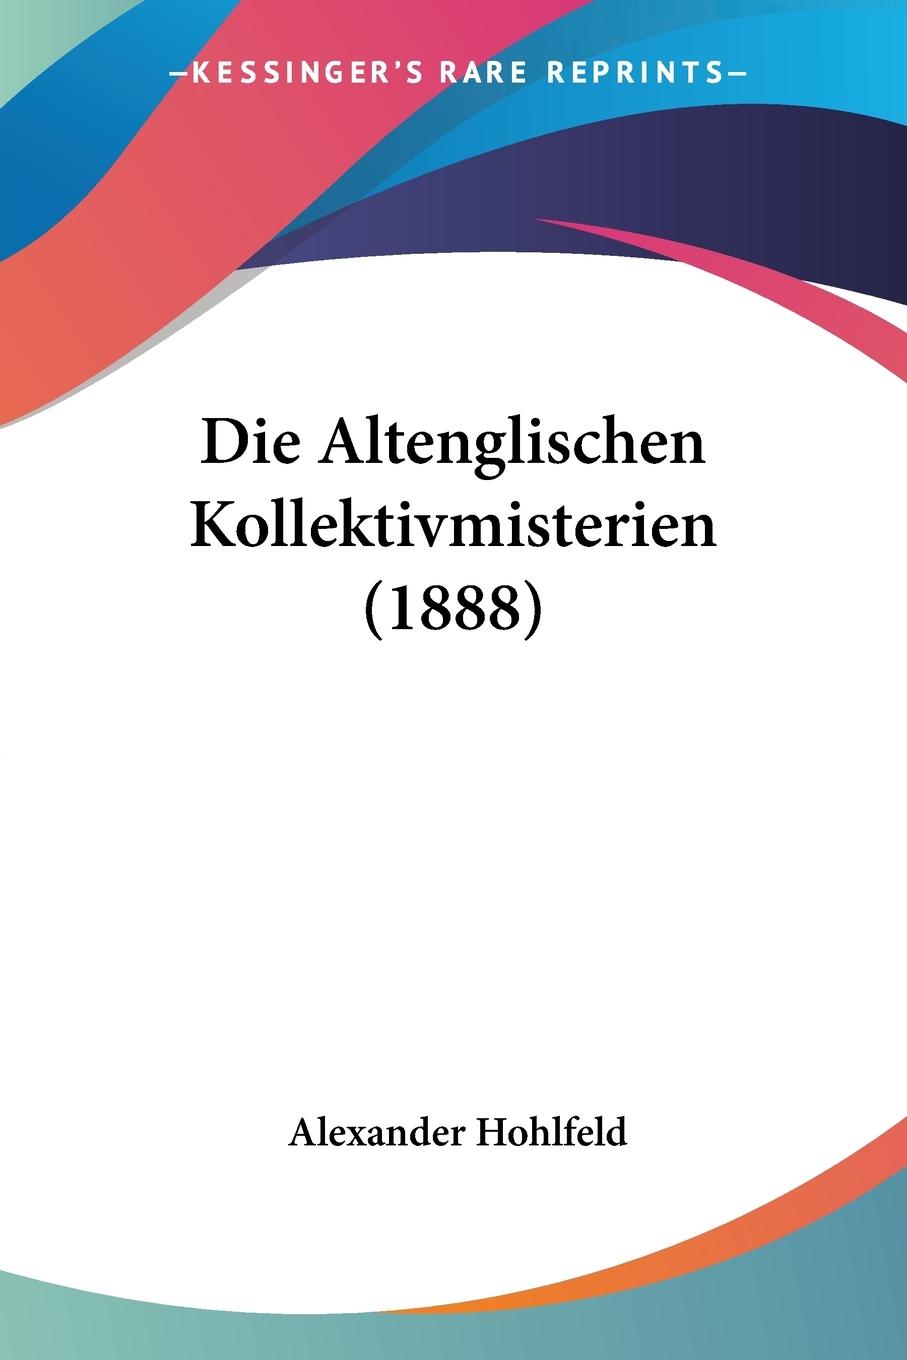 Die Altenglischen Kollektivmisterien (1888) - Hohlfeld, Alexander